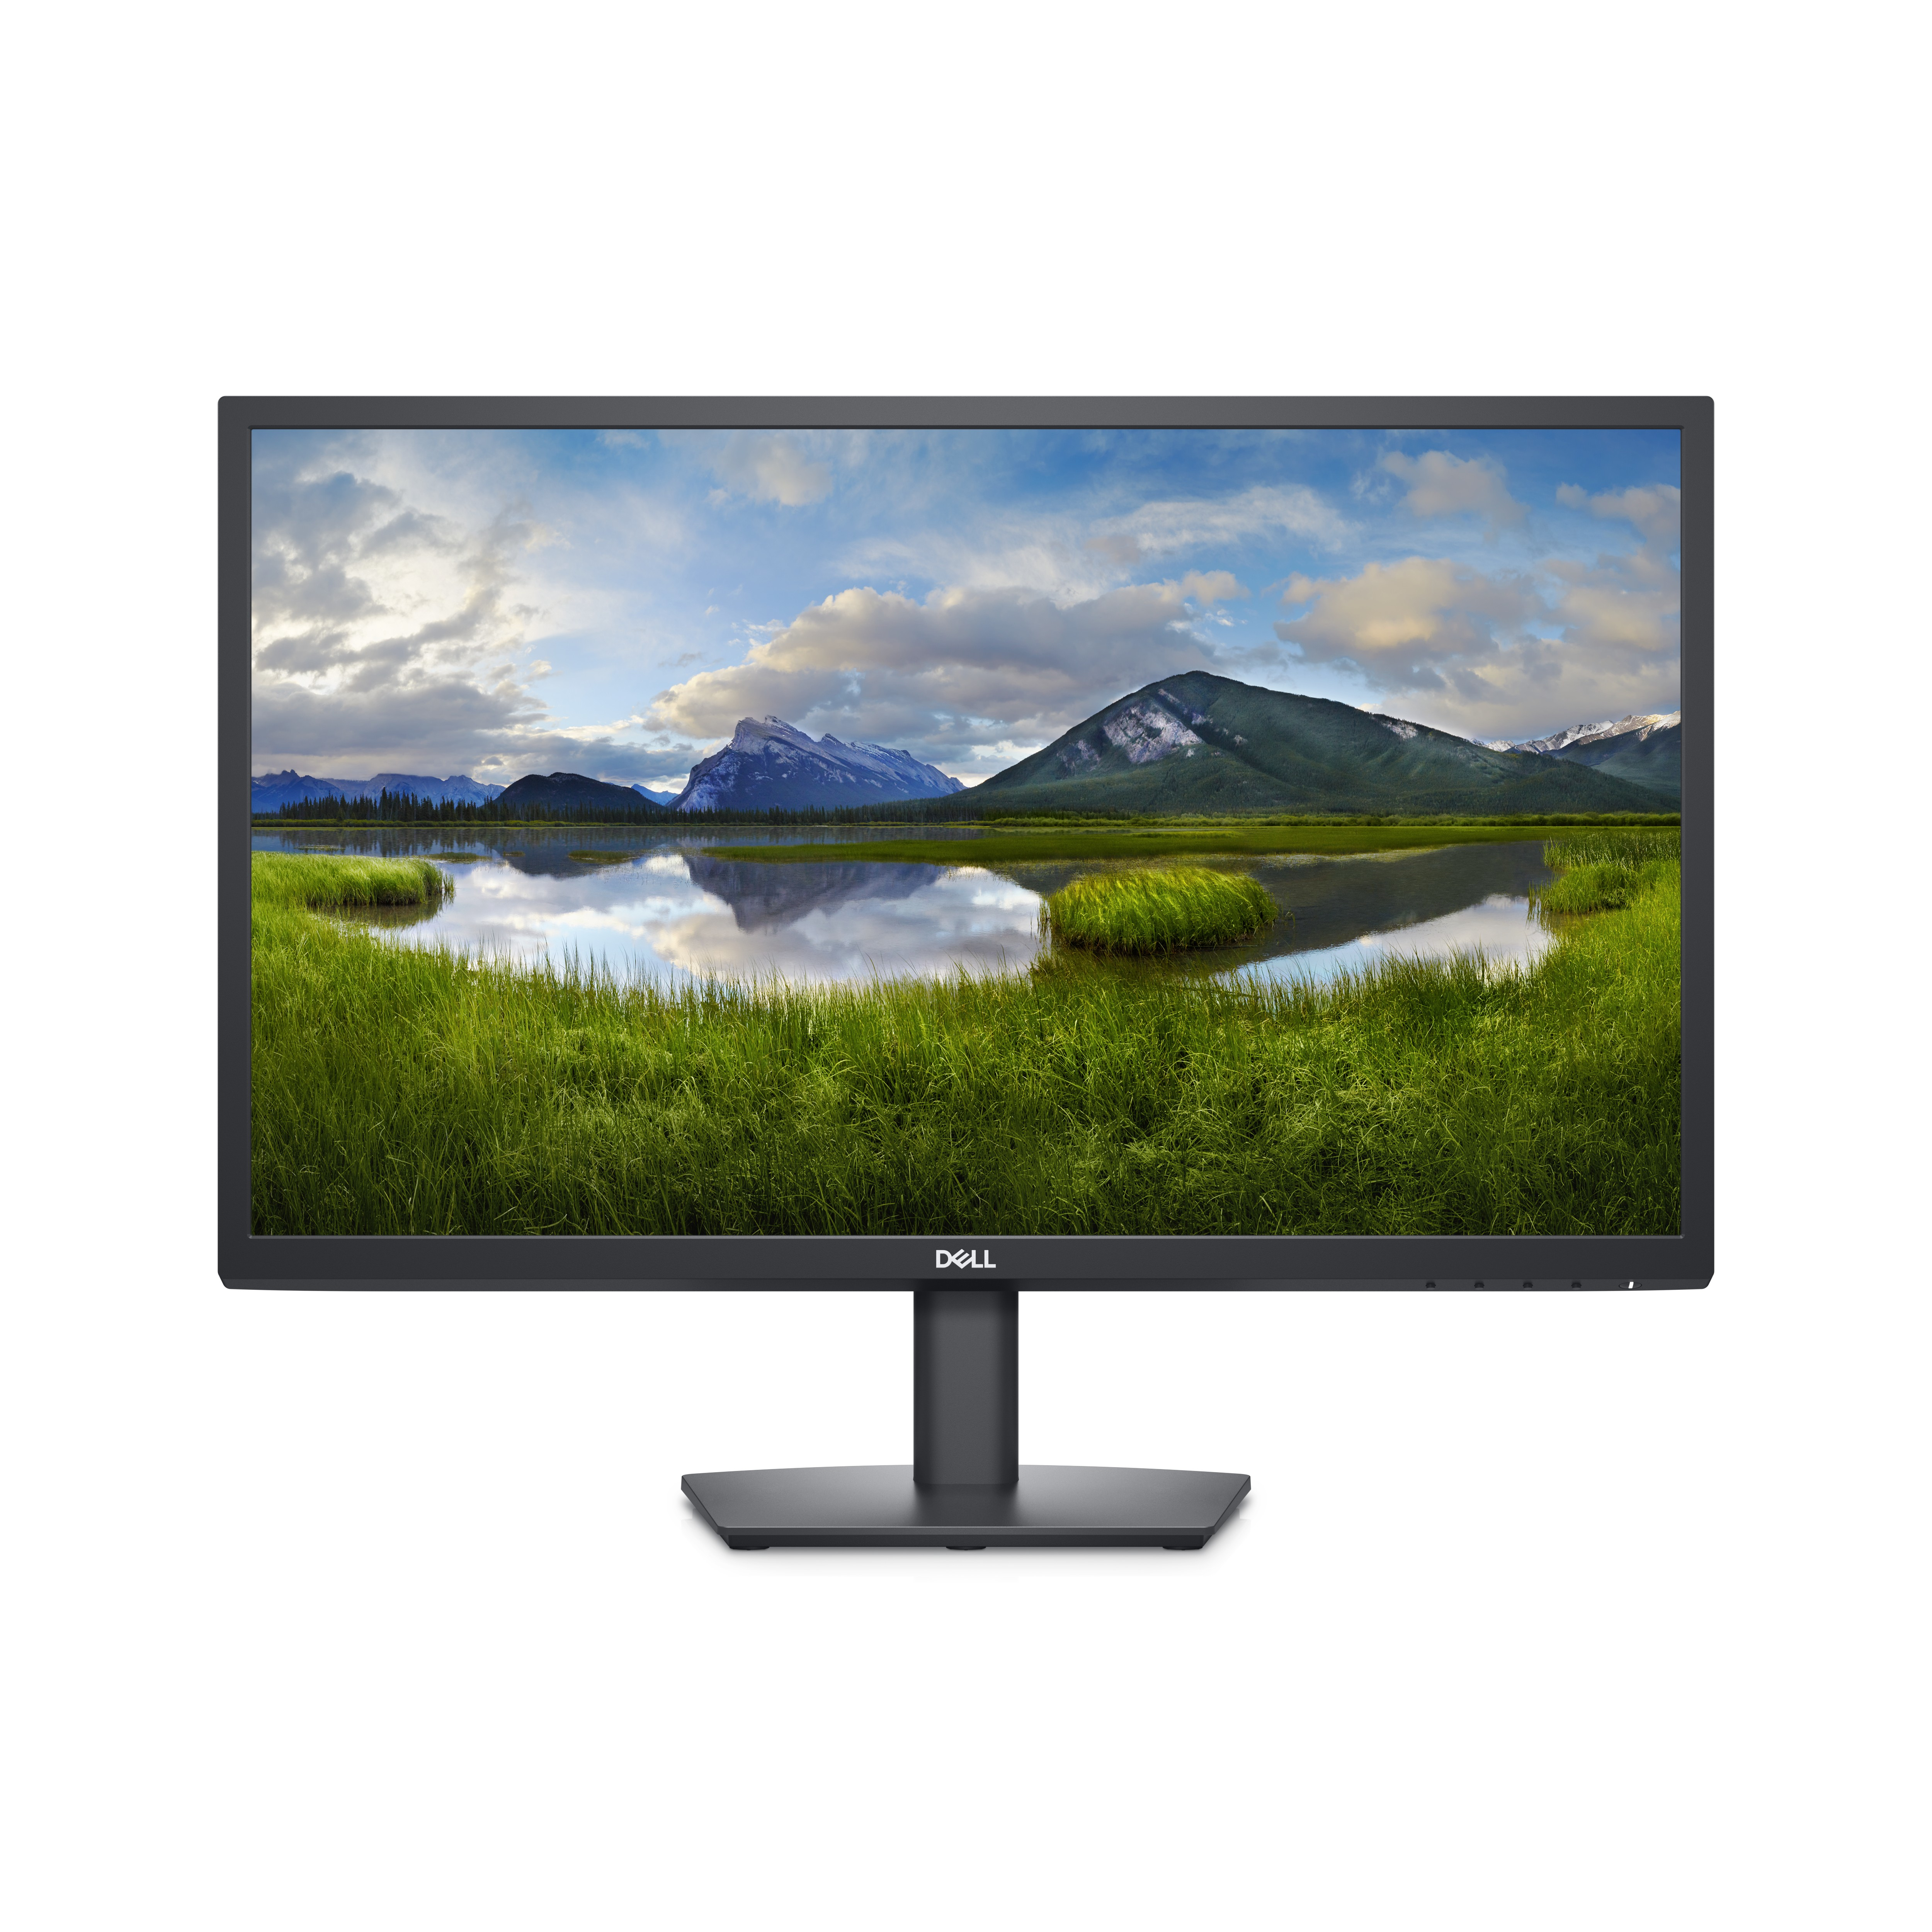 DELL Dell 24 Monitor – E2423H